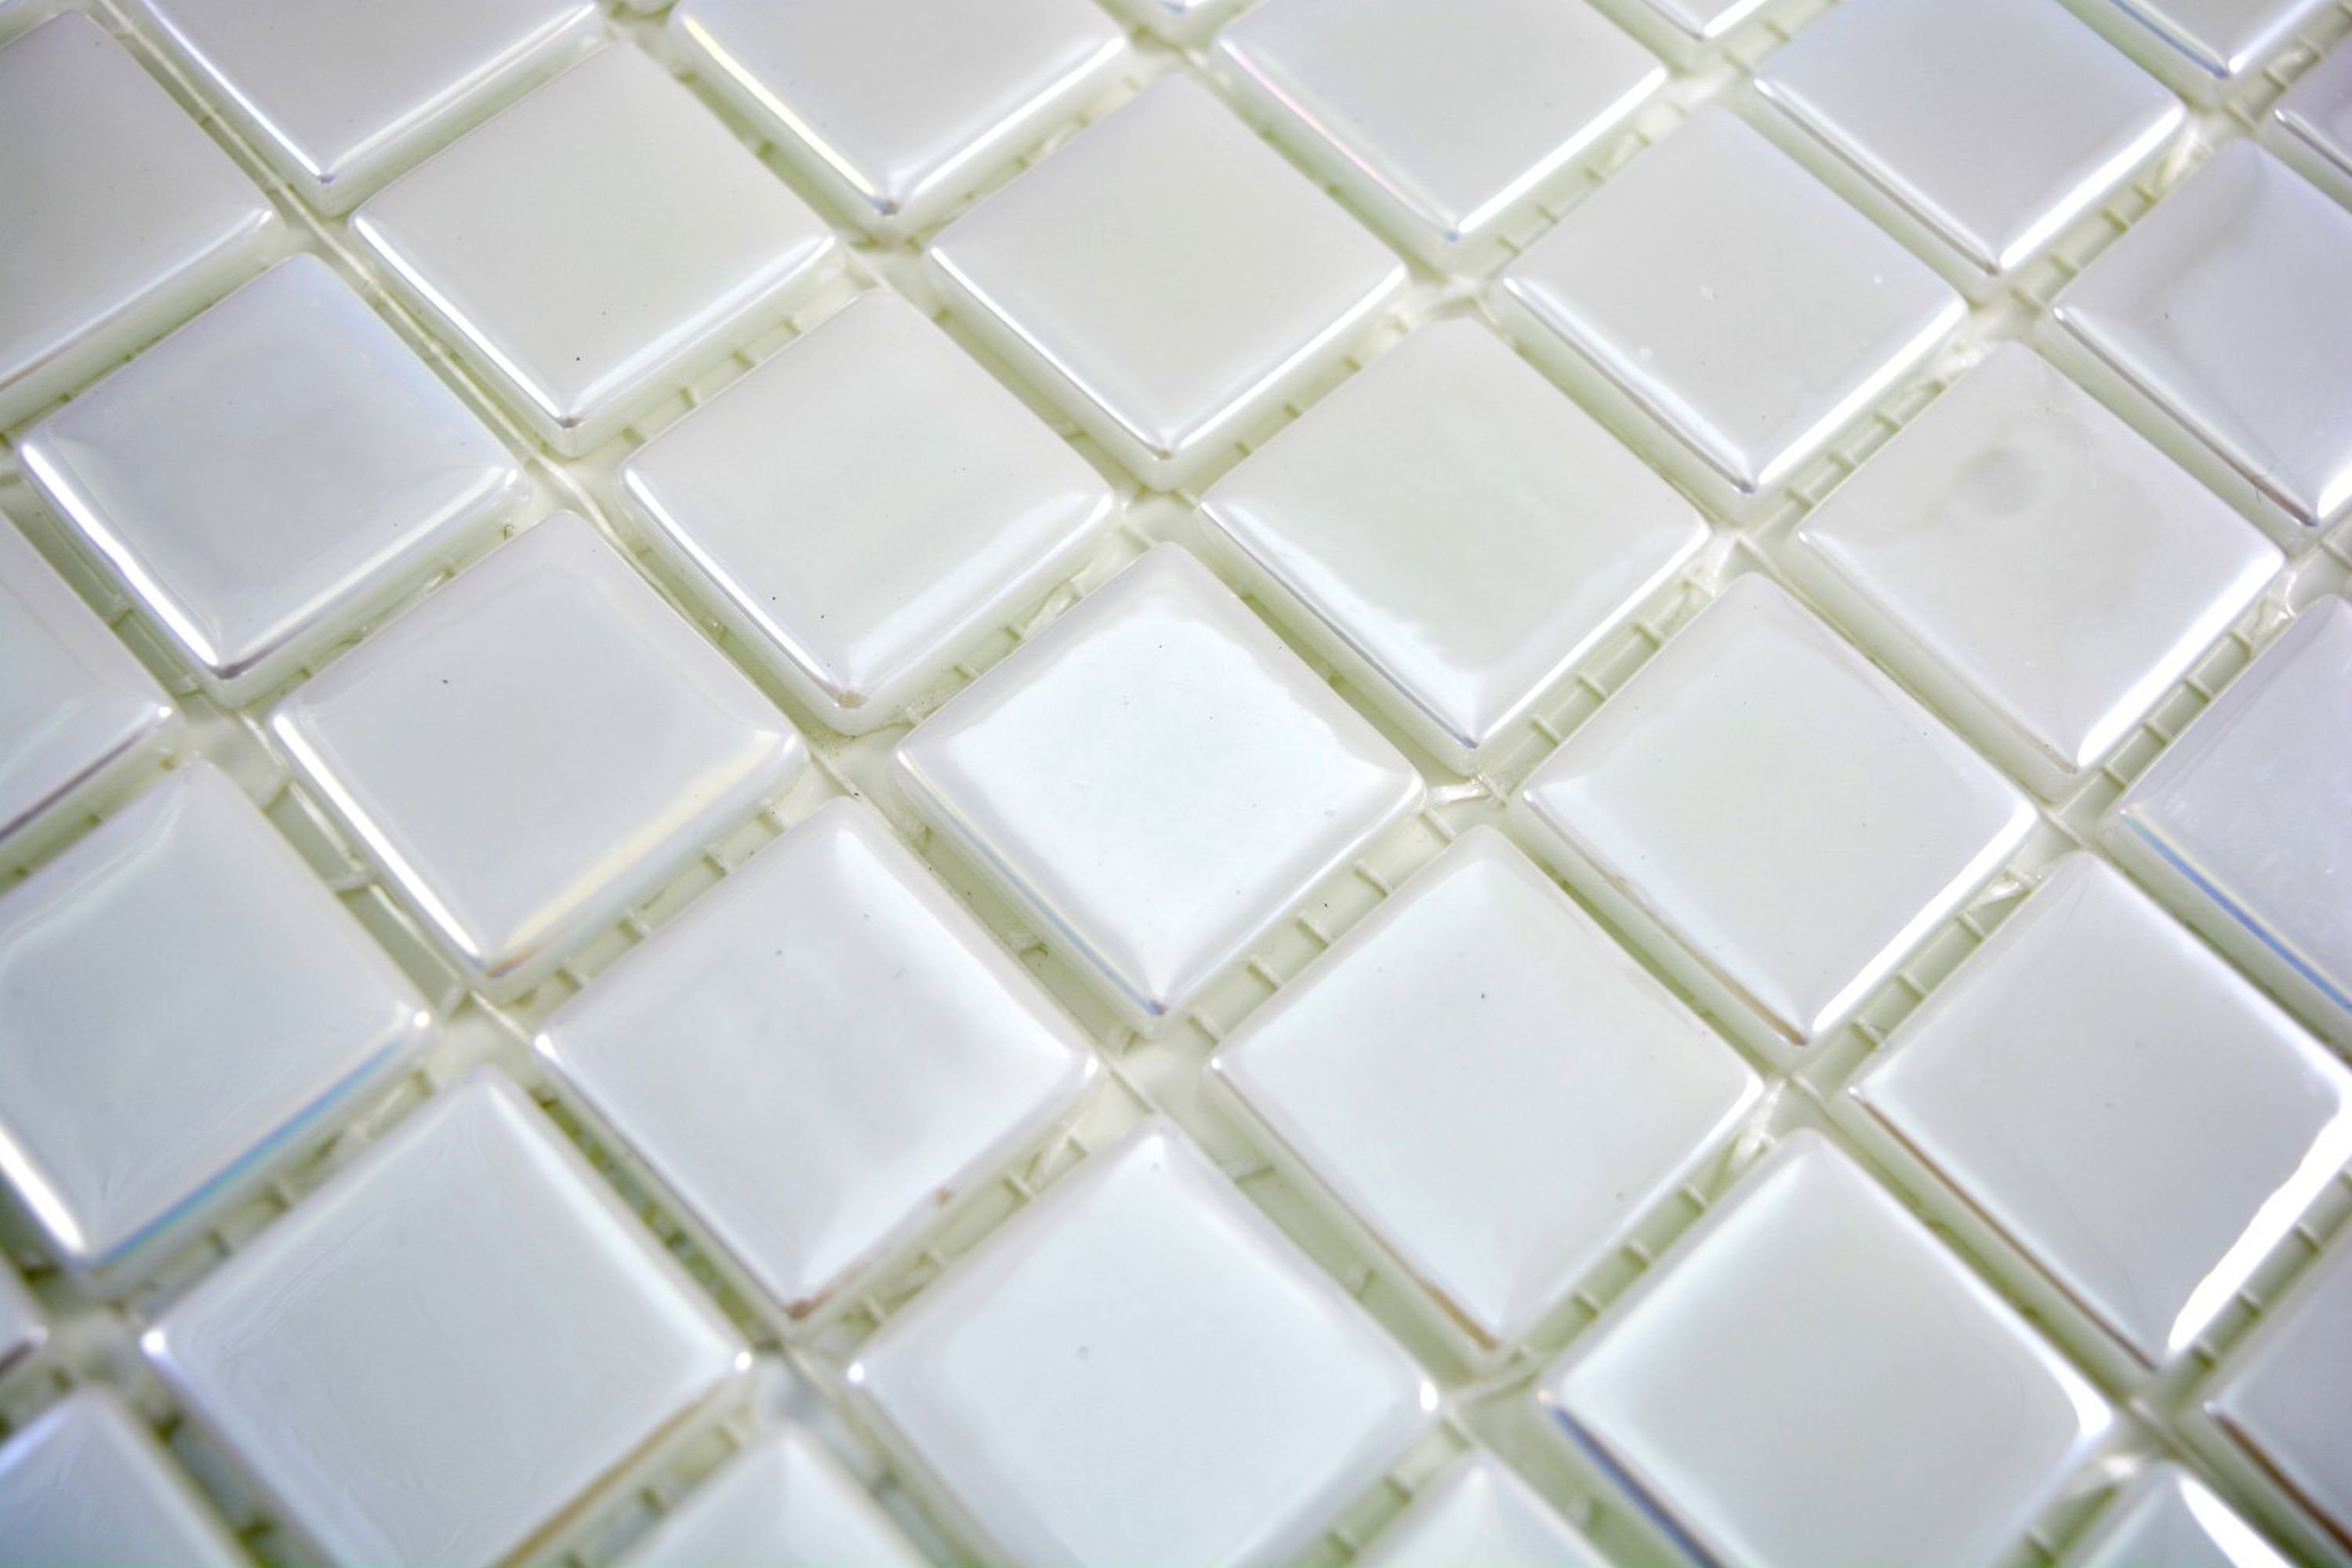 Mosani Mosaikfliesen Glasmosaik Wandbelag Fliese Recycling weiss Nachhaltiger metallic